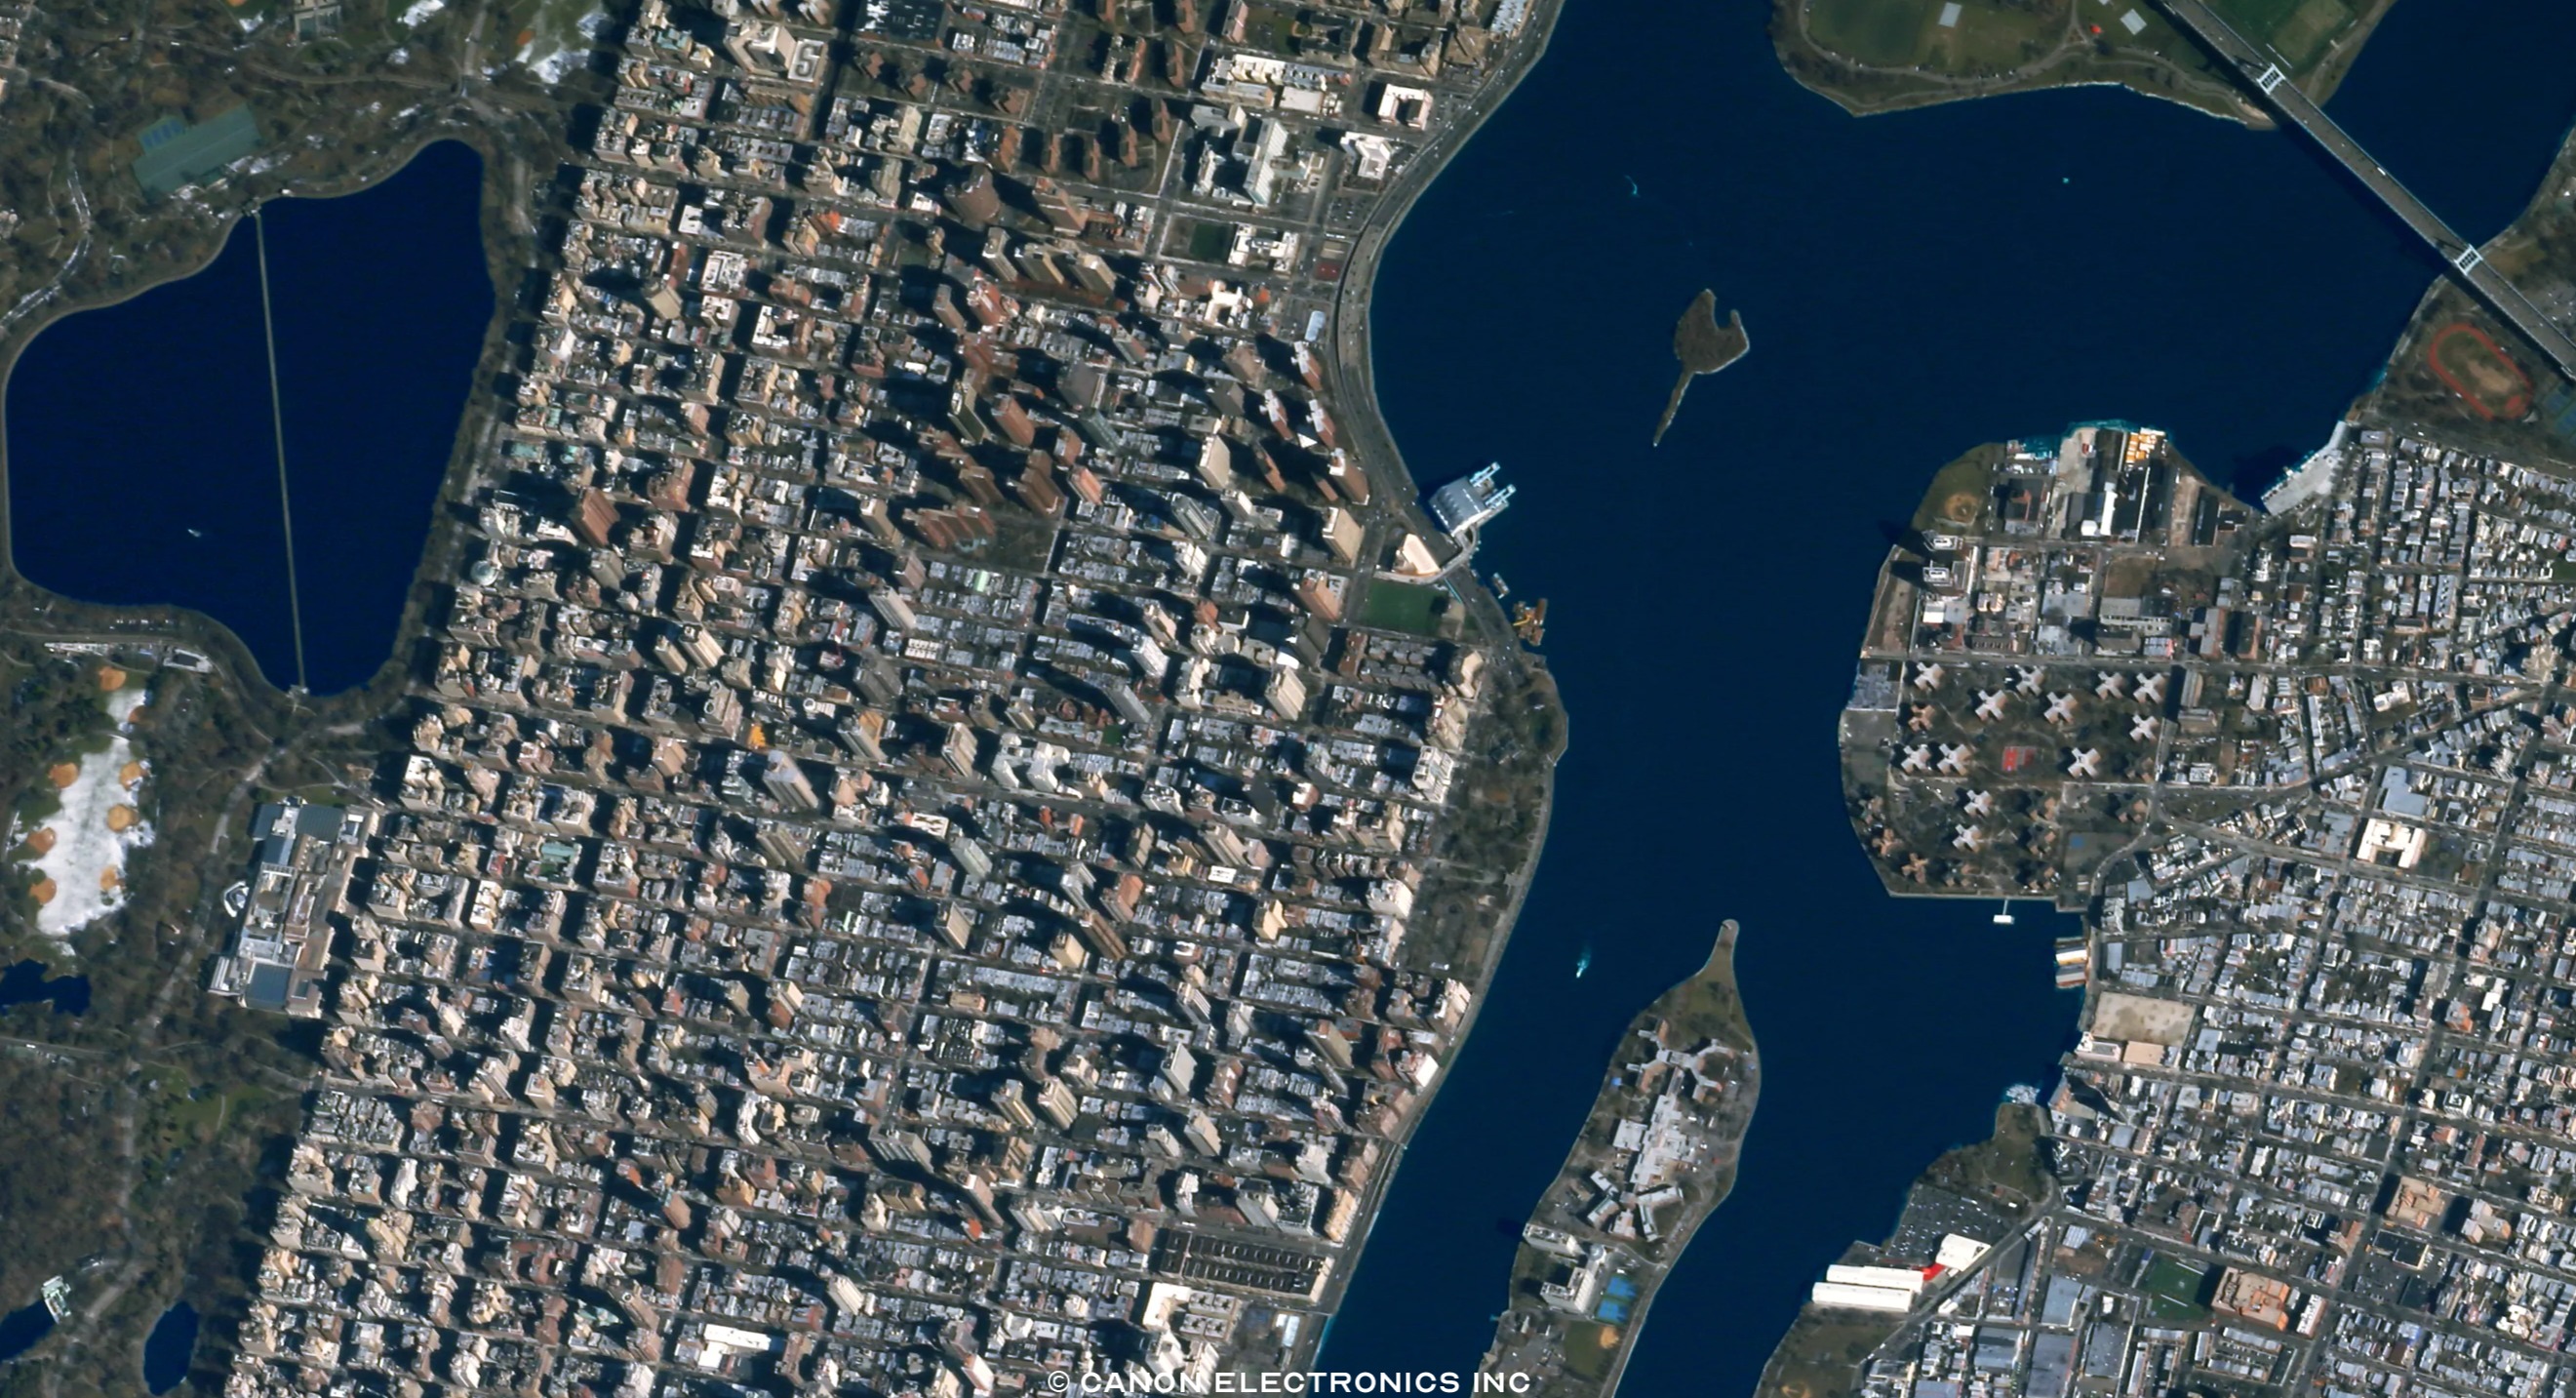 Петропавловск со спутника в реальном времени. Нью Йорк 1970 со спутника. Снимки со спутника в реальном времени. Титаник вид со спутника. Камера со спутника в реальном времени.